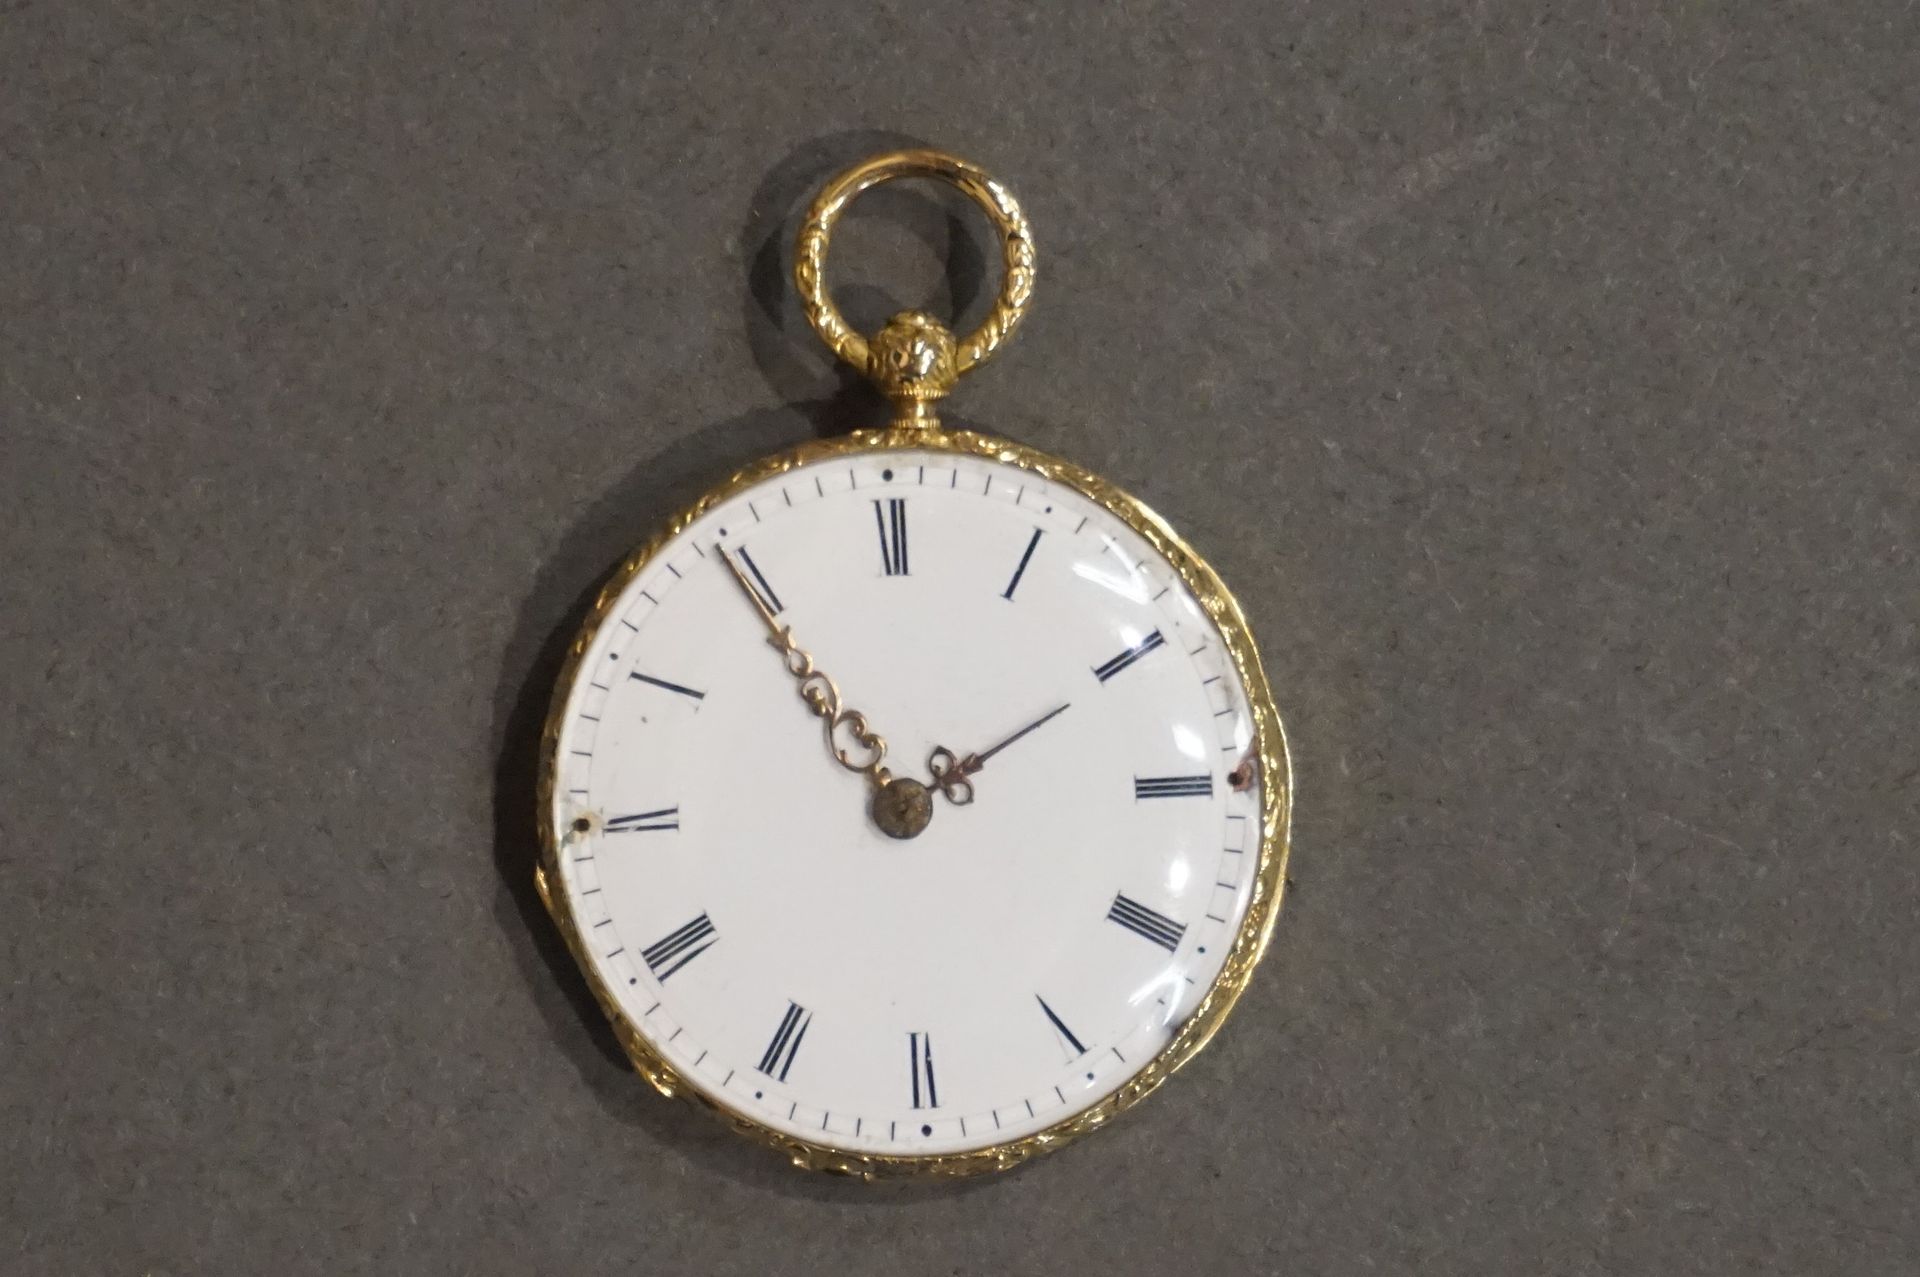 Montre de col Guilloche gold collar watch (Gross weight: 21 grs)